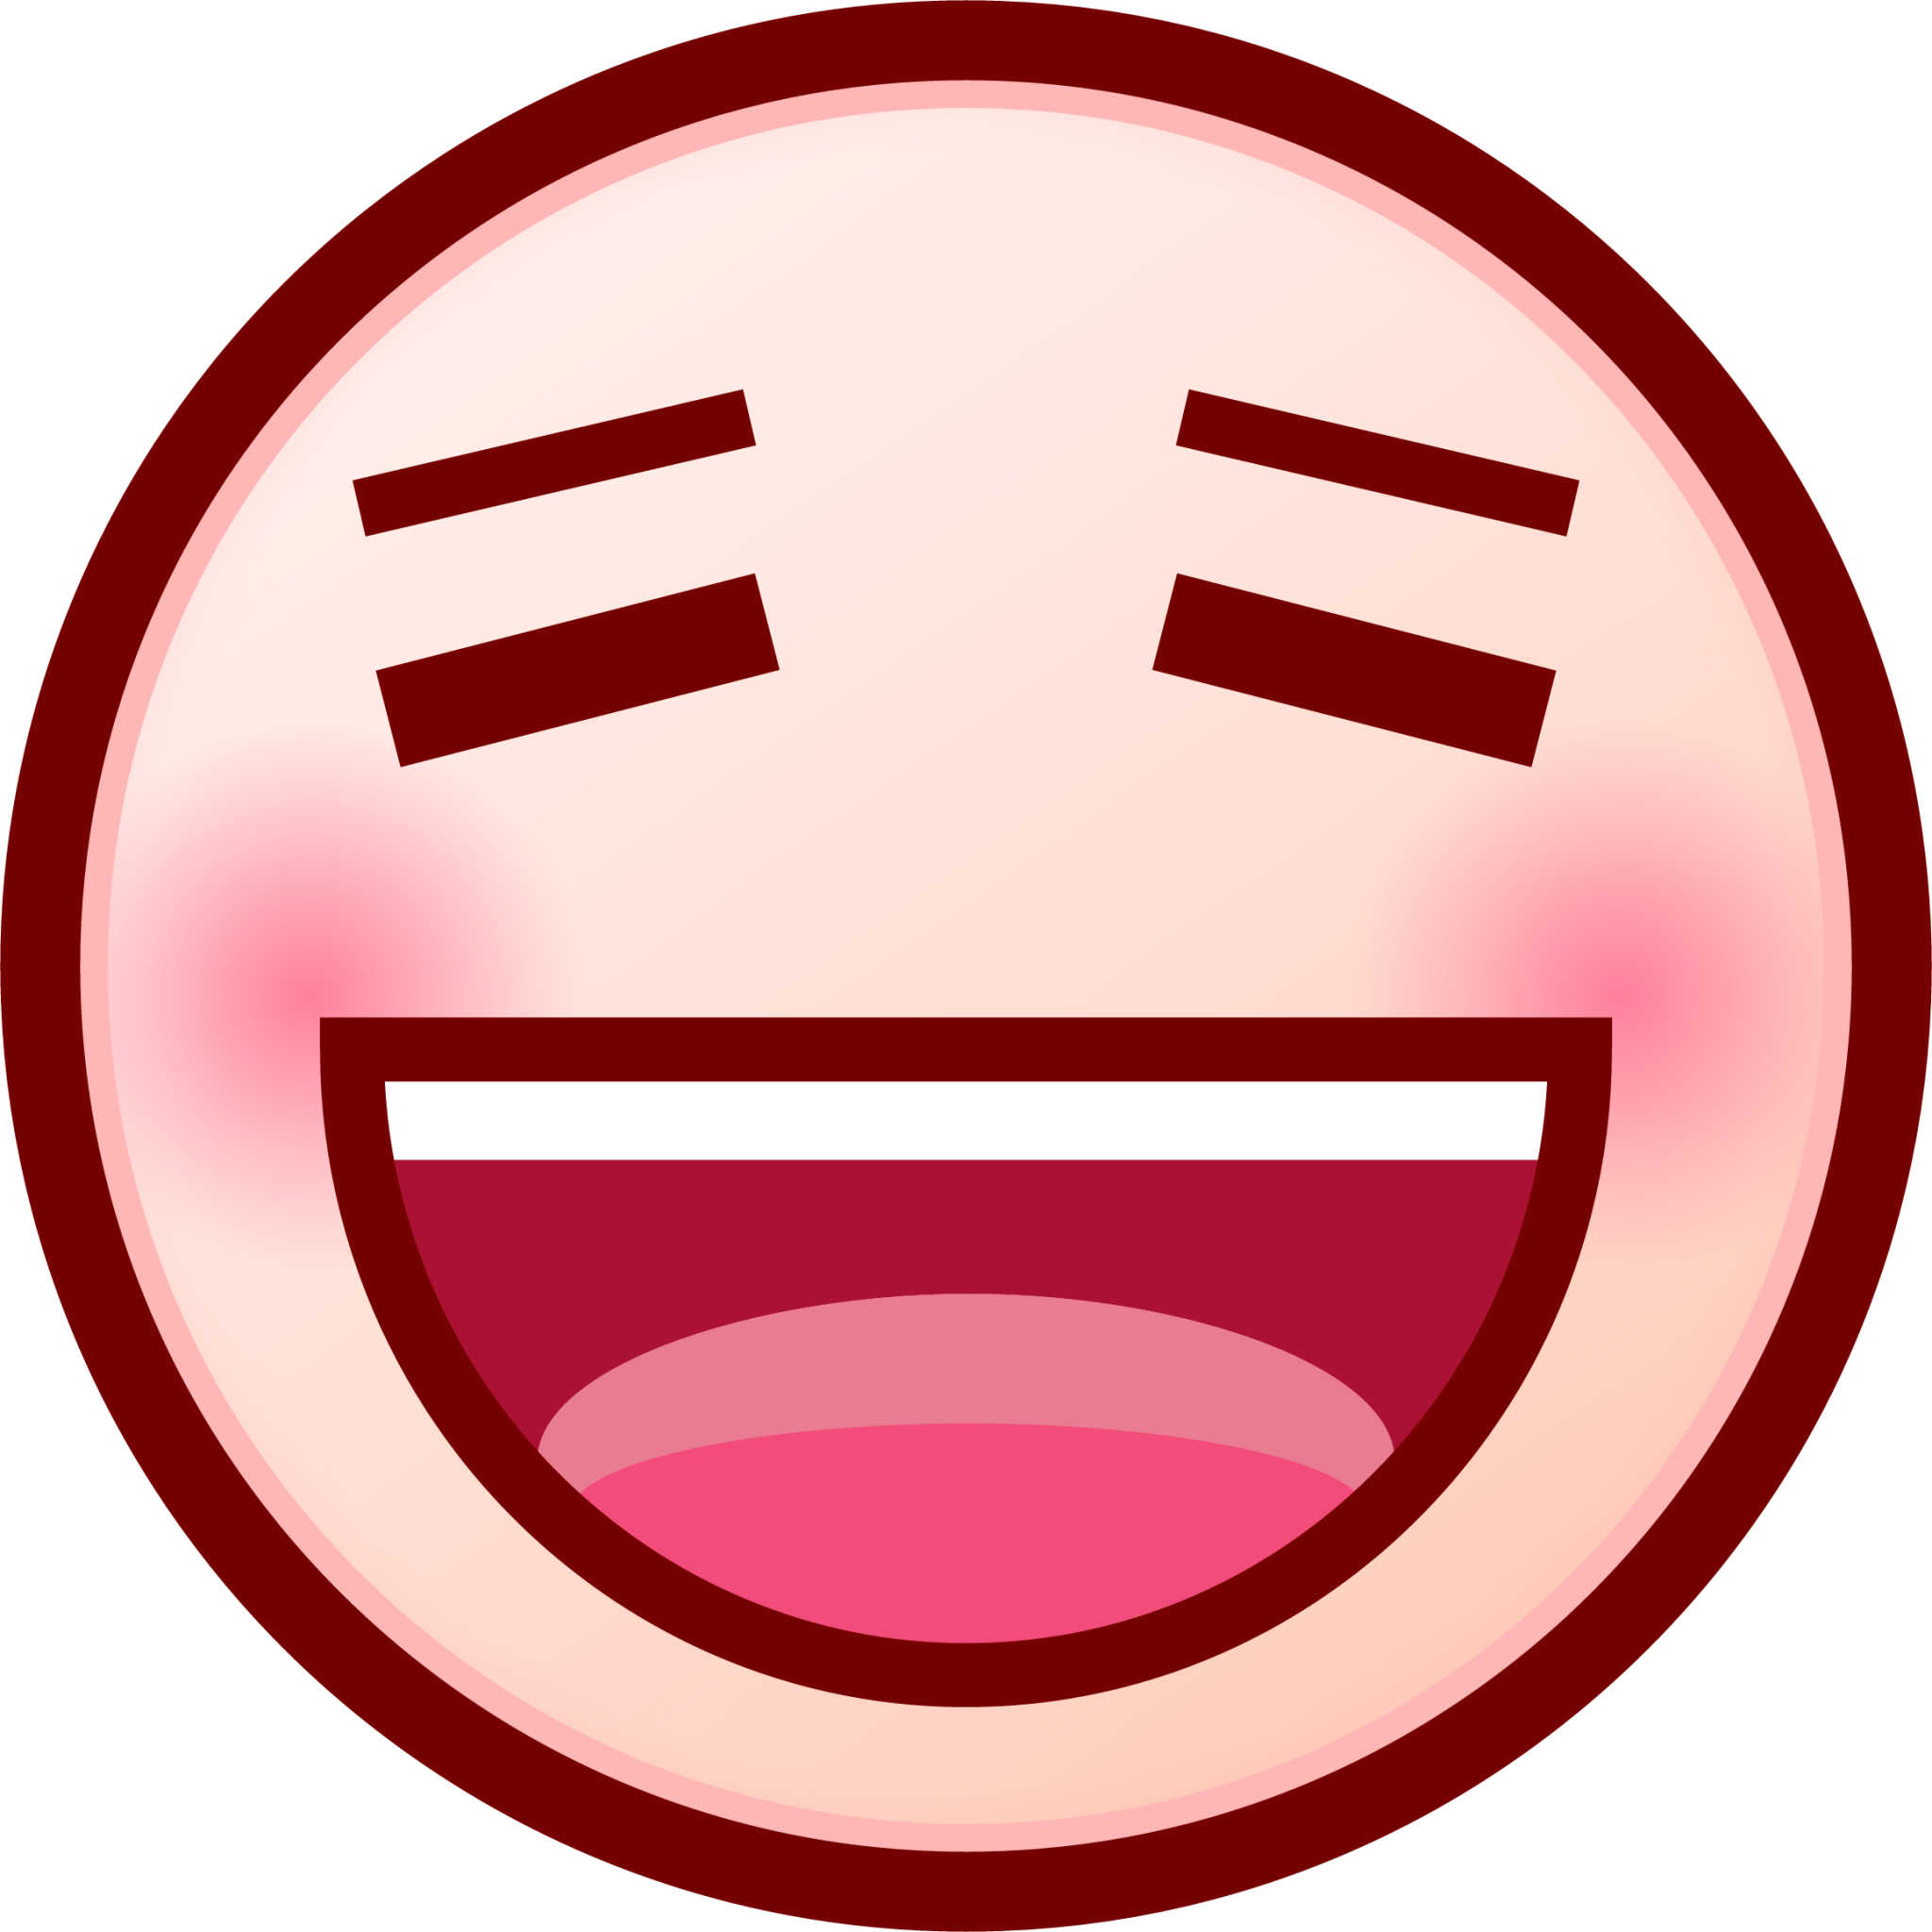 smiling face (white) emoji